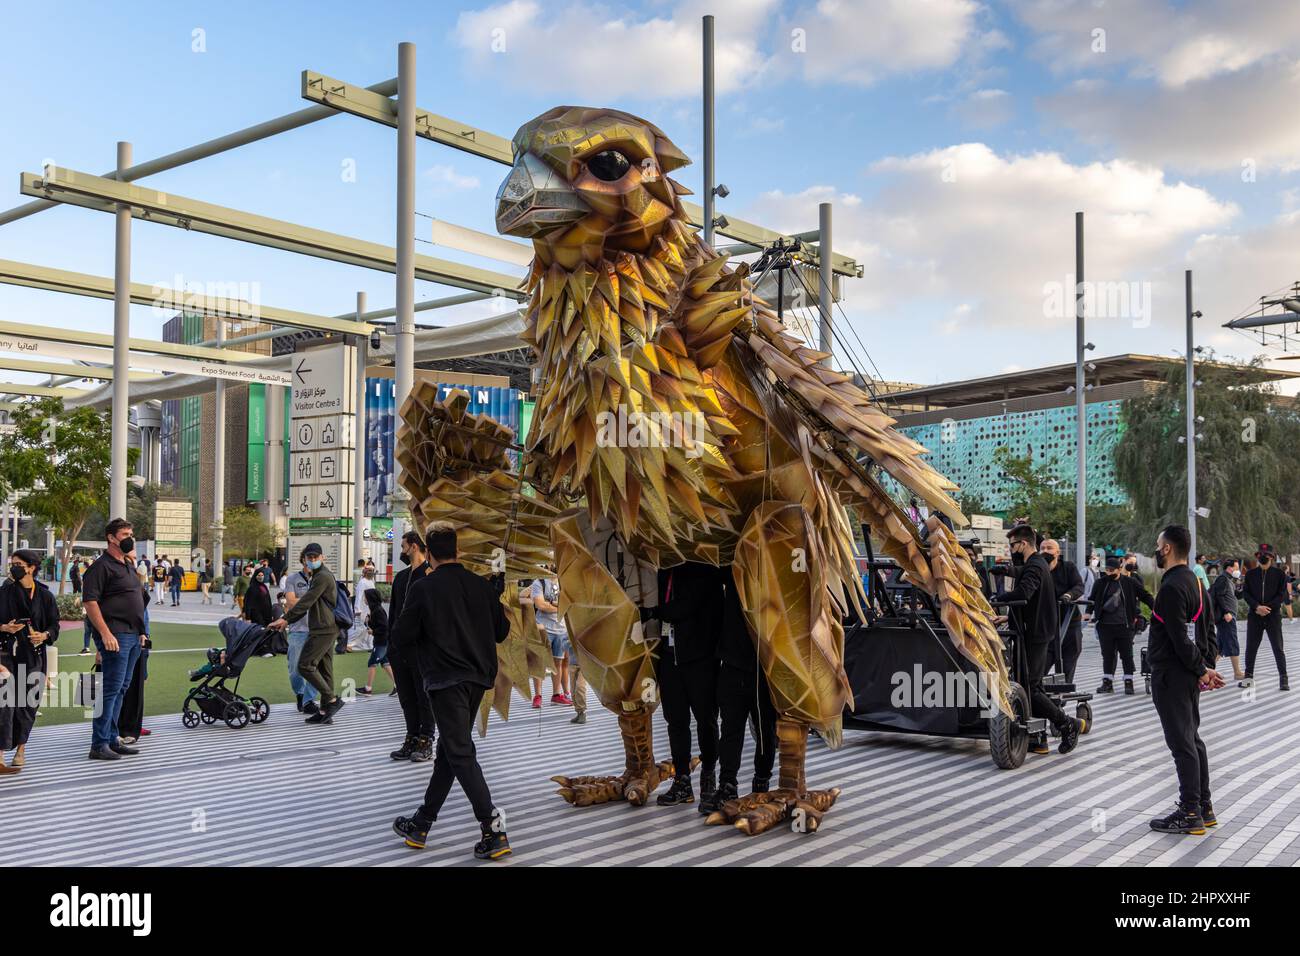 Un faucon mécanique géant, l’oiseau national des eau, à l’EXPO 2020 de Dubaï aux Émirats arabes Unis. Banque D'Images